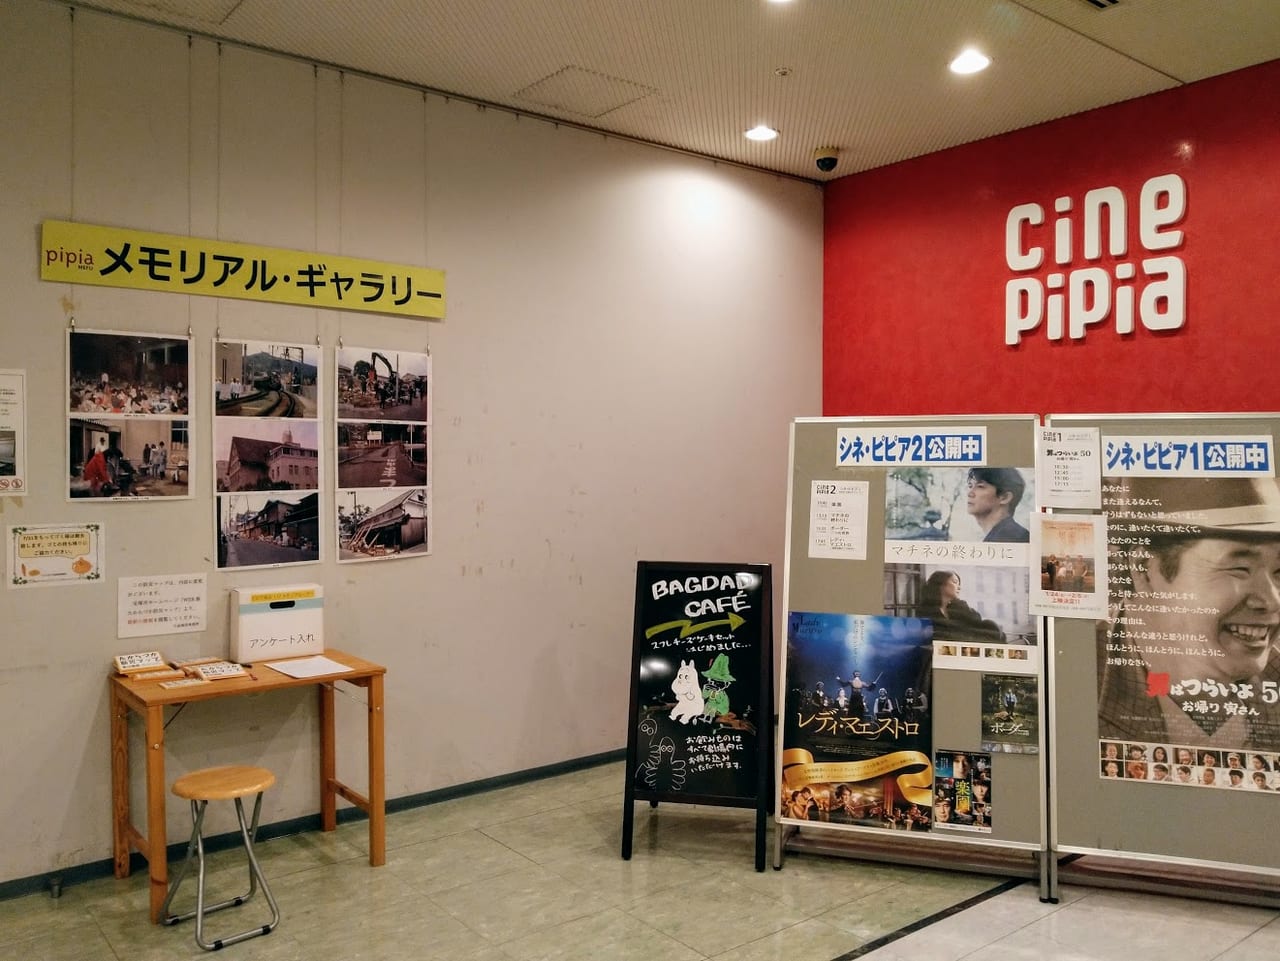 ピピアめふ「阪神・淡路大震災当時の市内の写真展示」